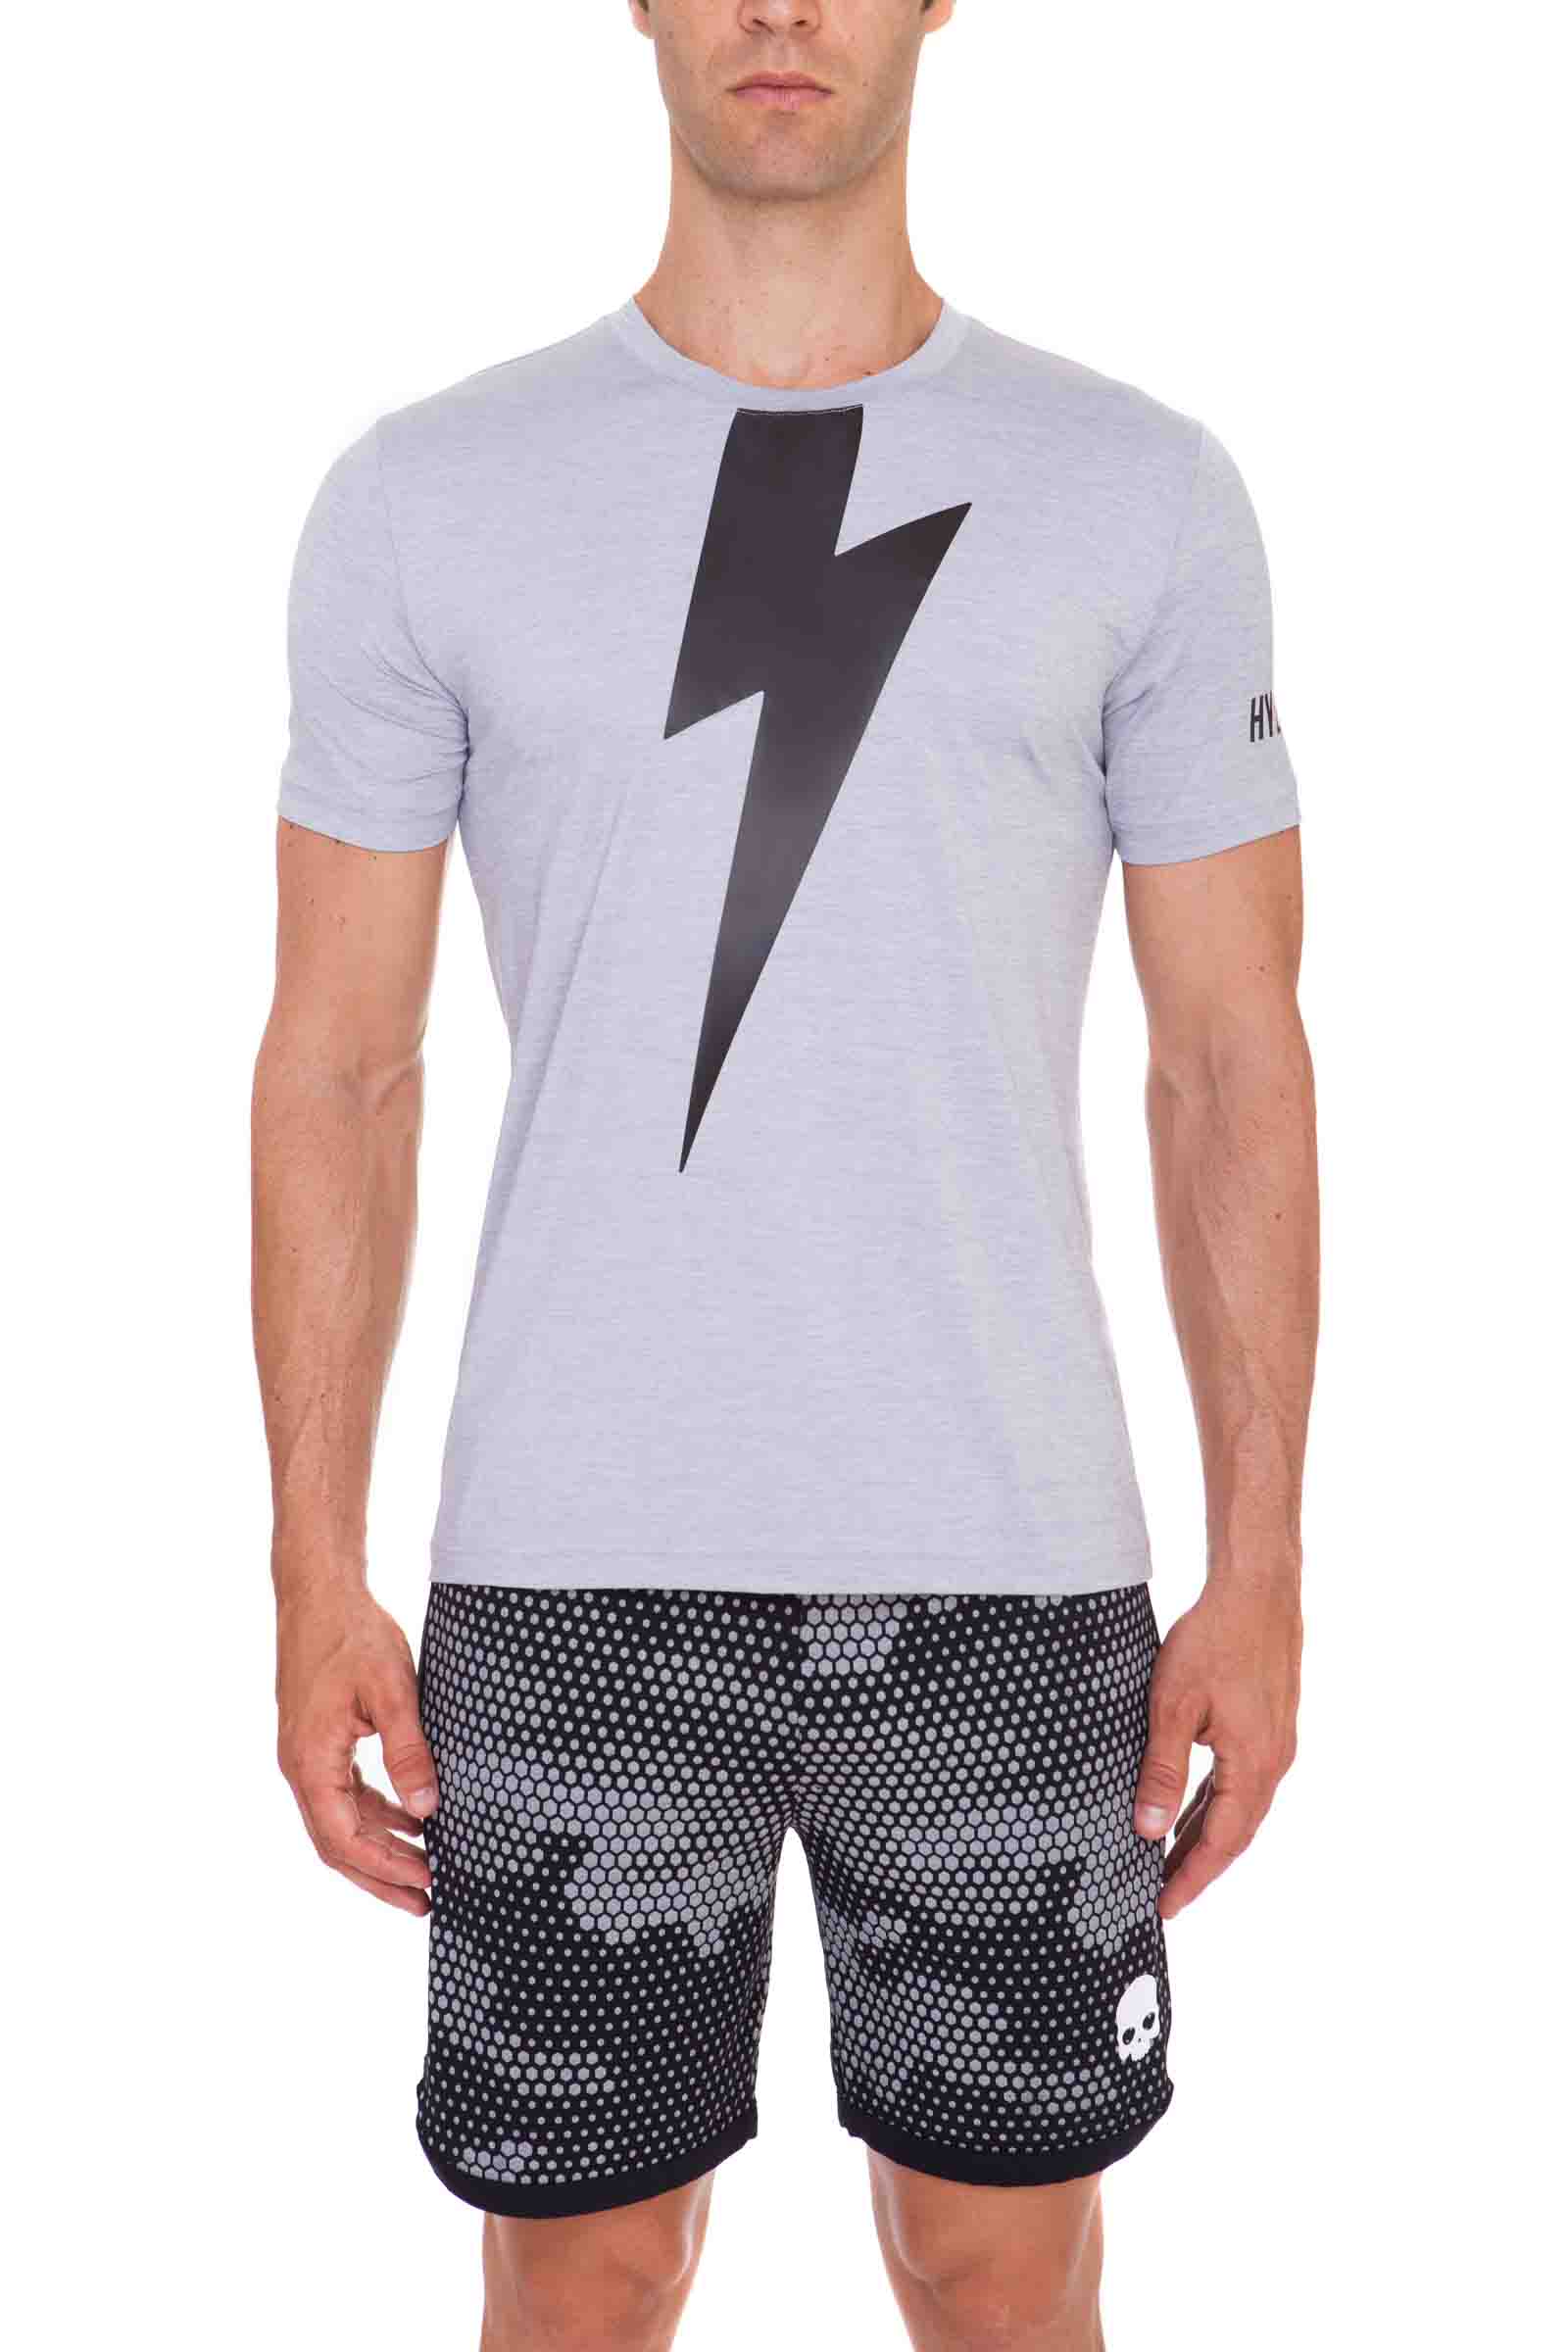 Thunderbolt Tech T-Shirt